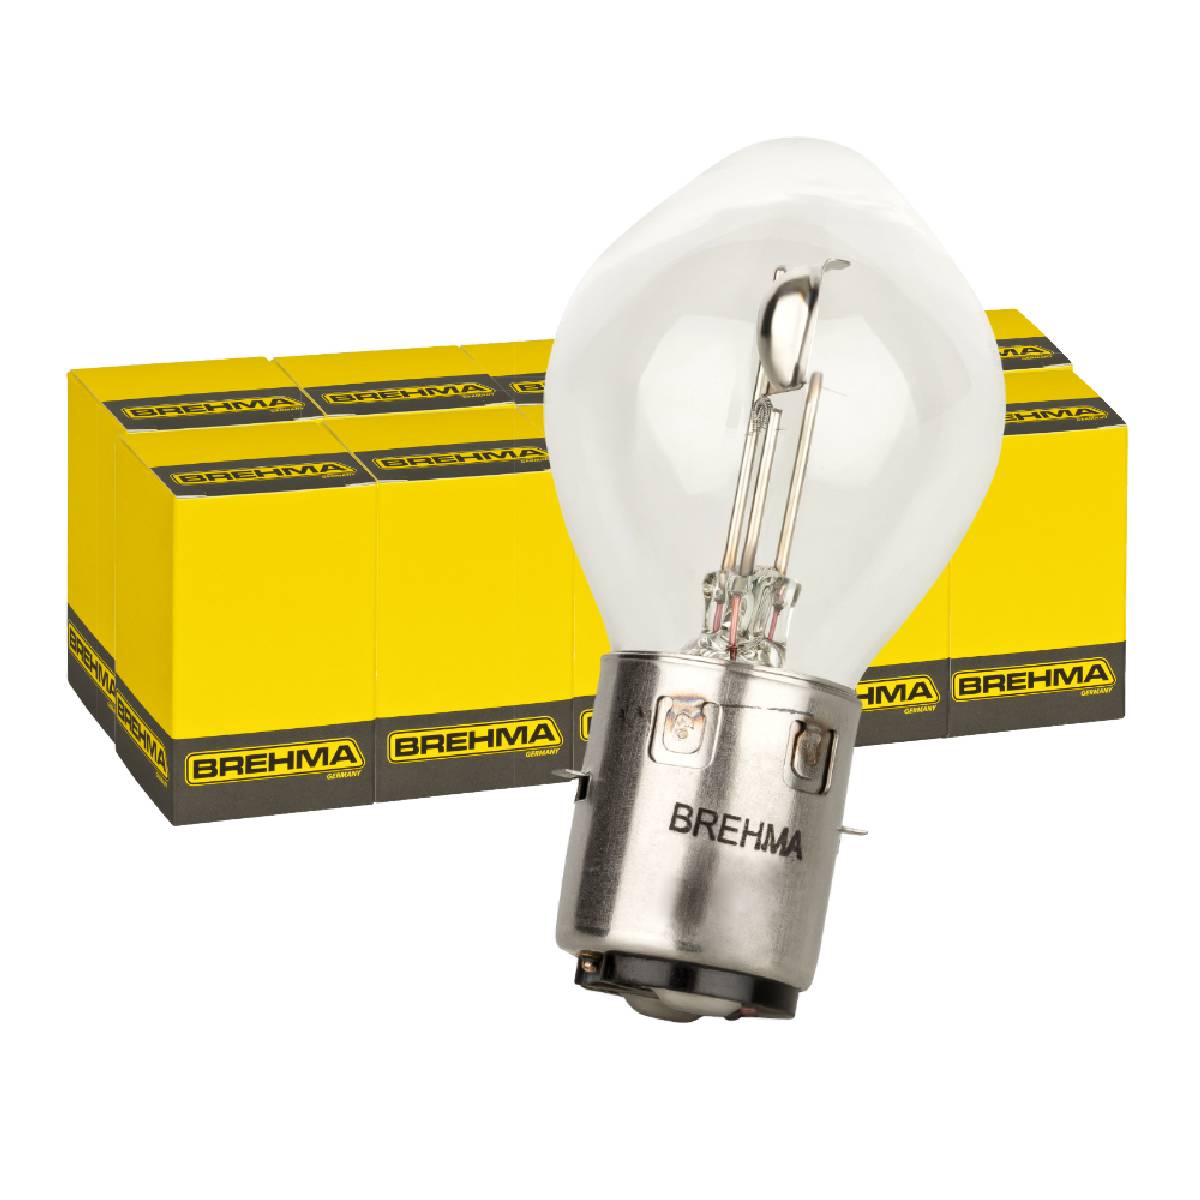 Auto-Lampen-Discount - H7 Lampen und mehr günstig kaufen - 10x BREHMA S1 6V  25/25W BA20d Bilux Zweiradlampe